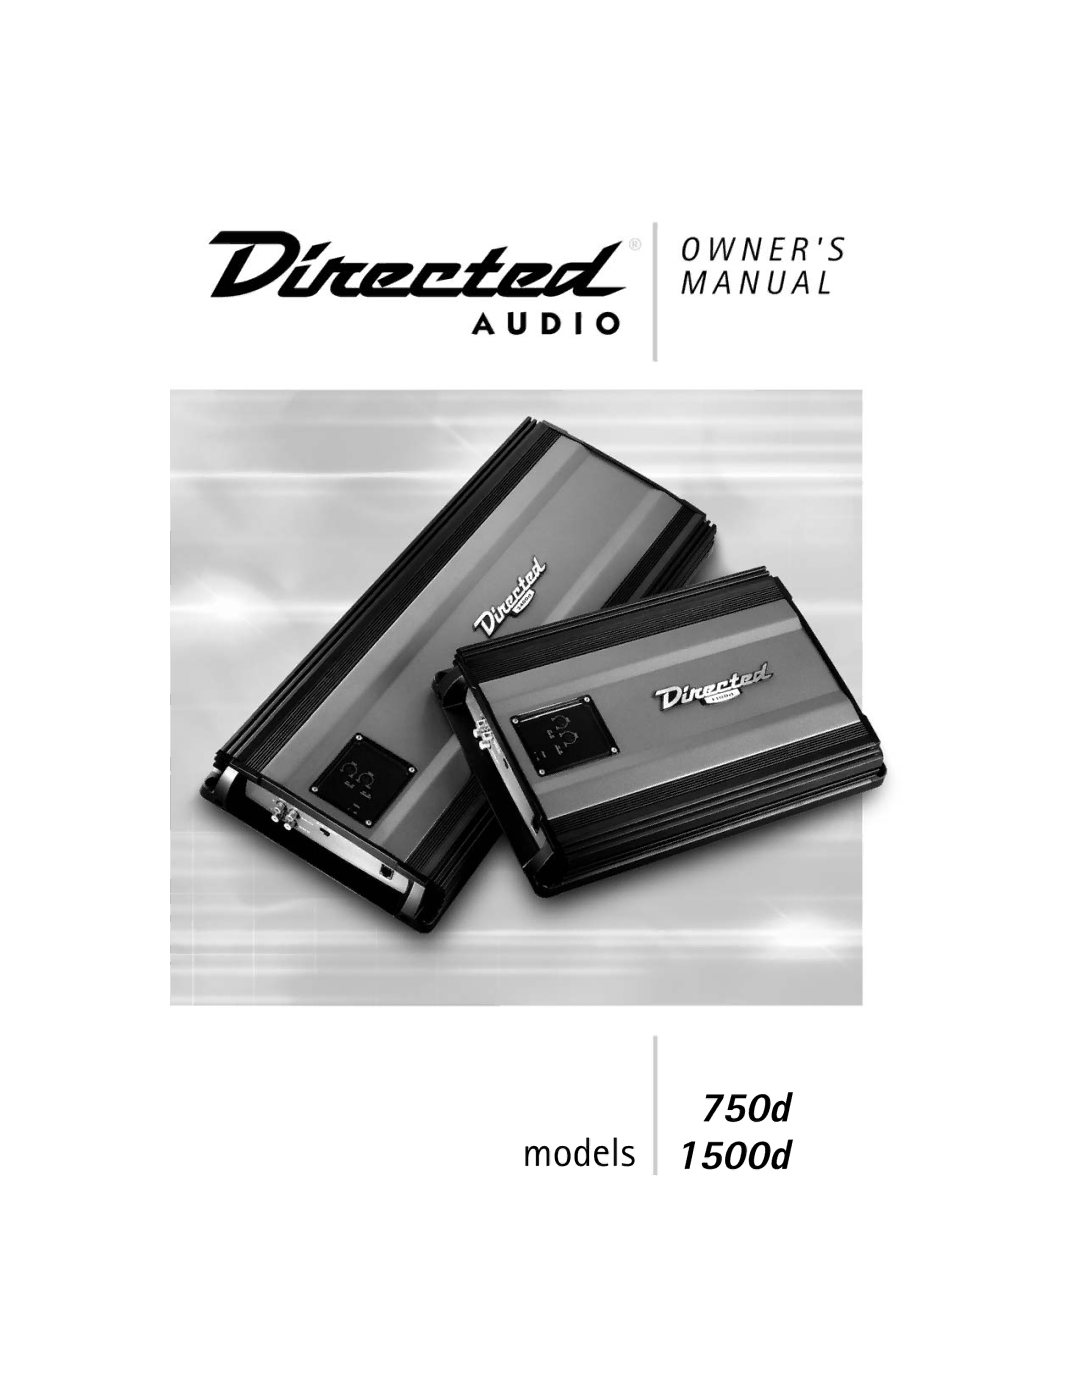 Directed Audio 750d 1500d manual 750d models 1500d 